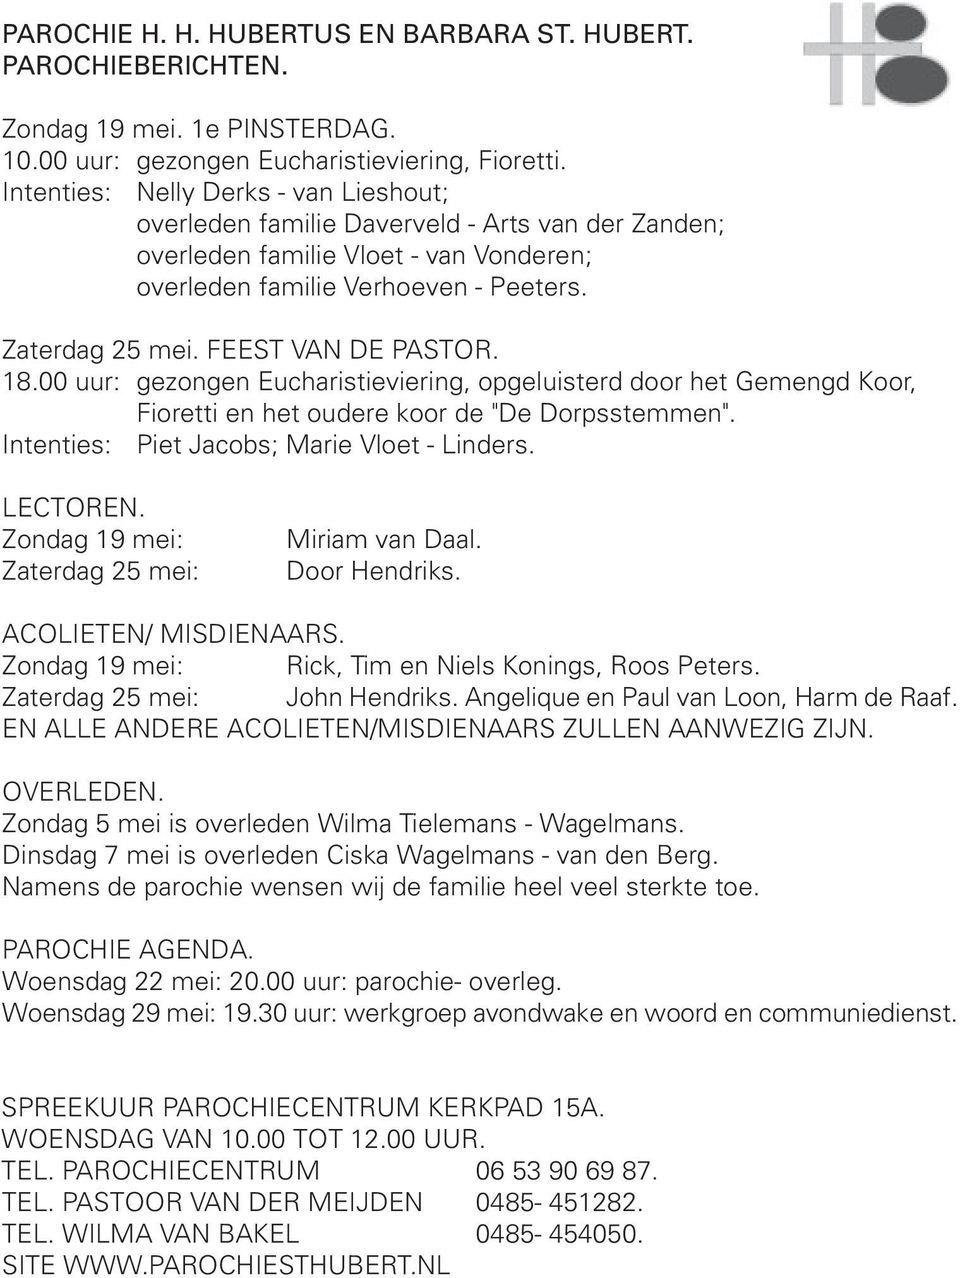 FEEST VAN DE PASTOR..00 uur: gezongen Eucharistieviering, opgeluisterd door het Gemengd Koor, Fioretti en het oudere koor de "De Dorpsstemmen". Intenties: Piet Jacobs; Marie Vloet - Linders. LECTOREN.